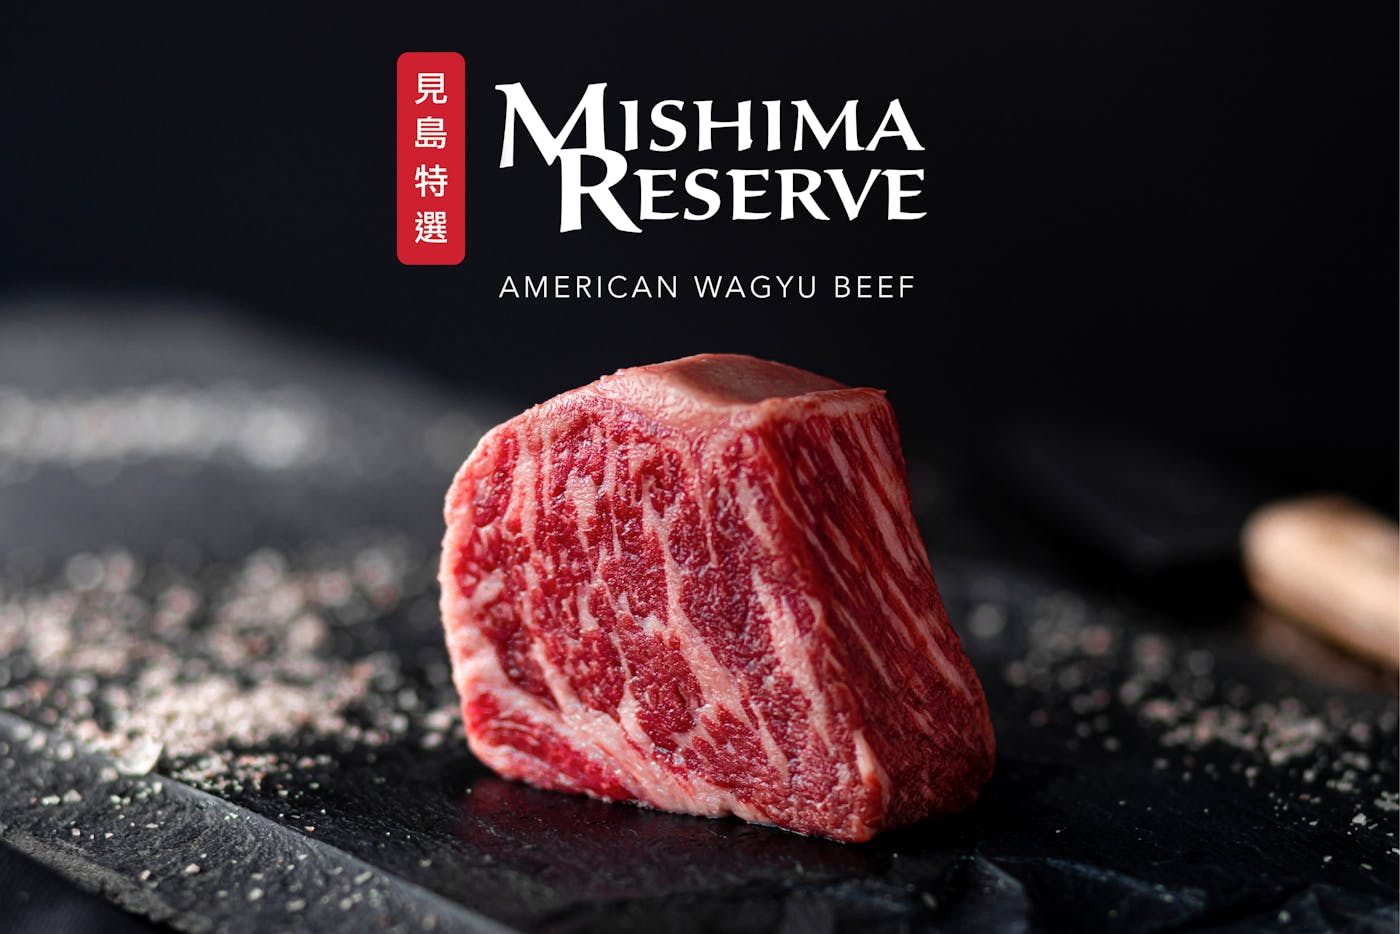 Mishima Reserve Logo Image